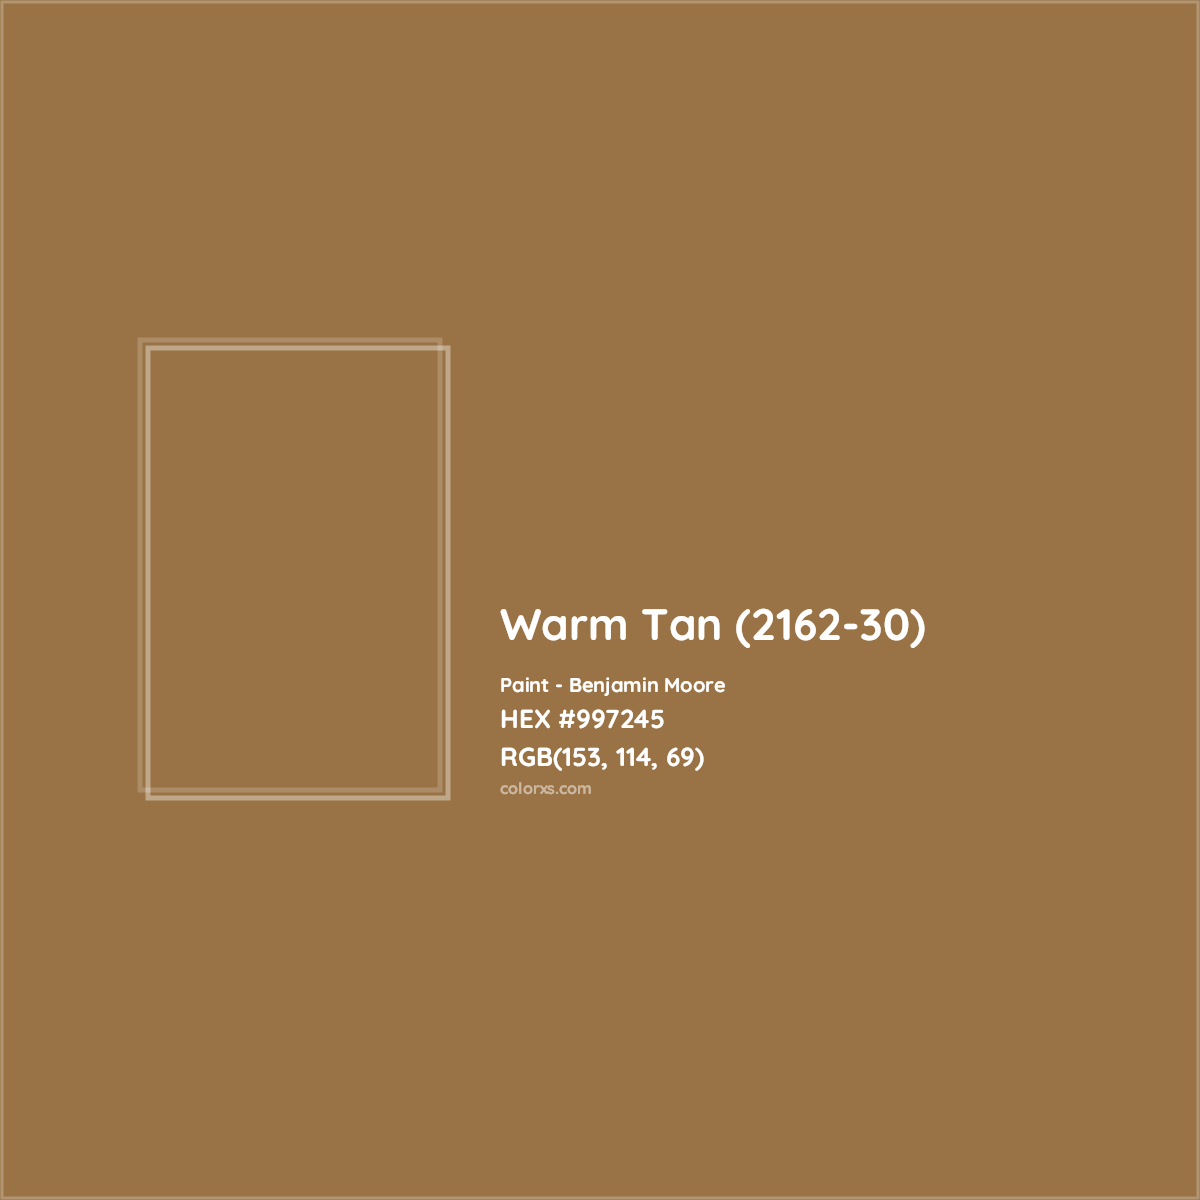 HEX #997245 Warm Tan (2162-30) Paint Benjamin Moore - Color Code